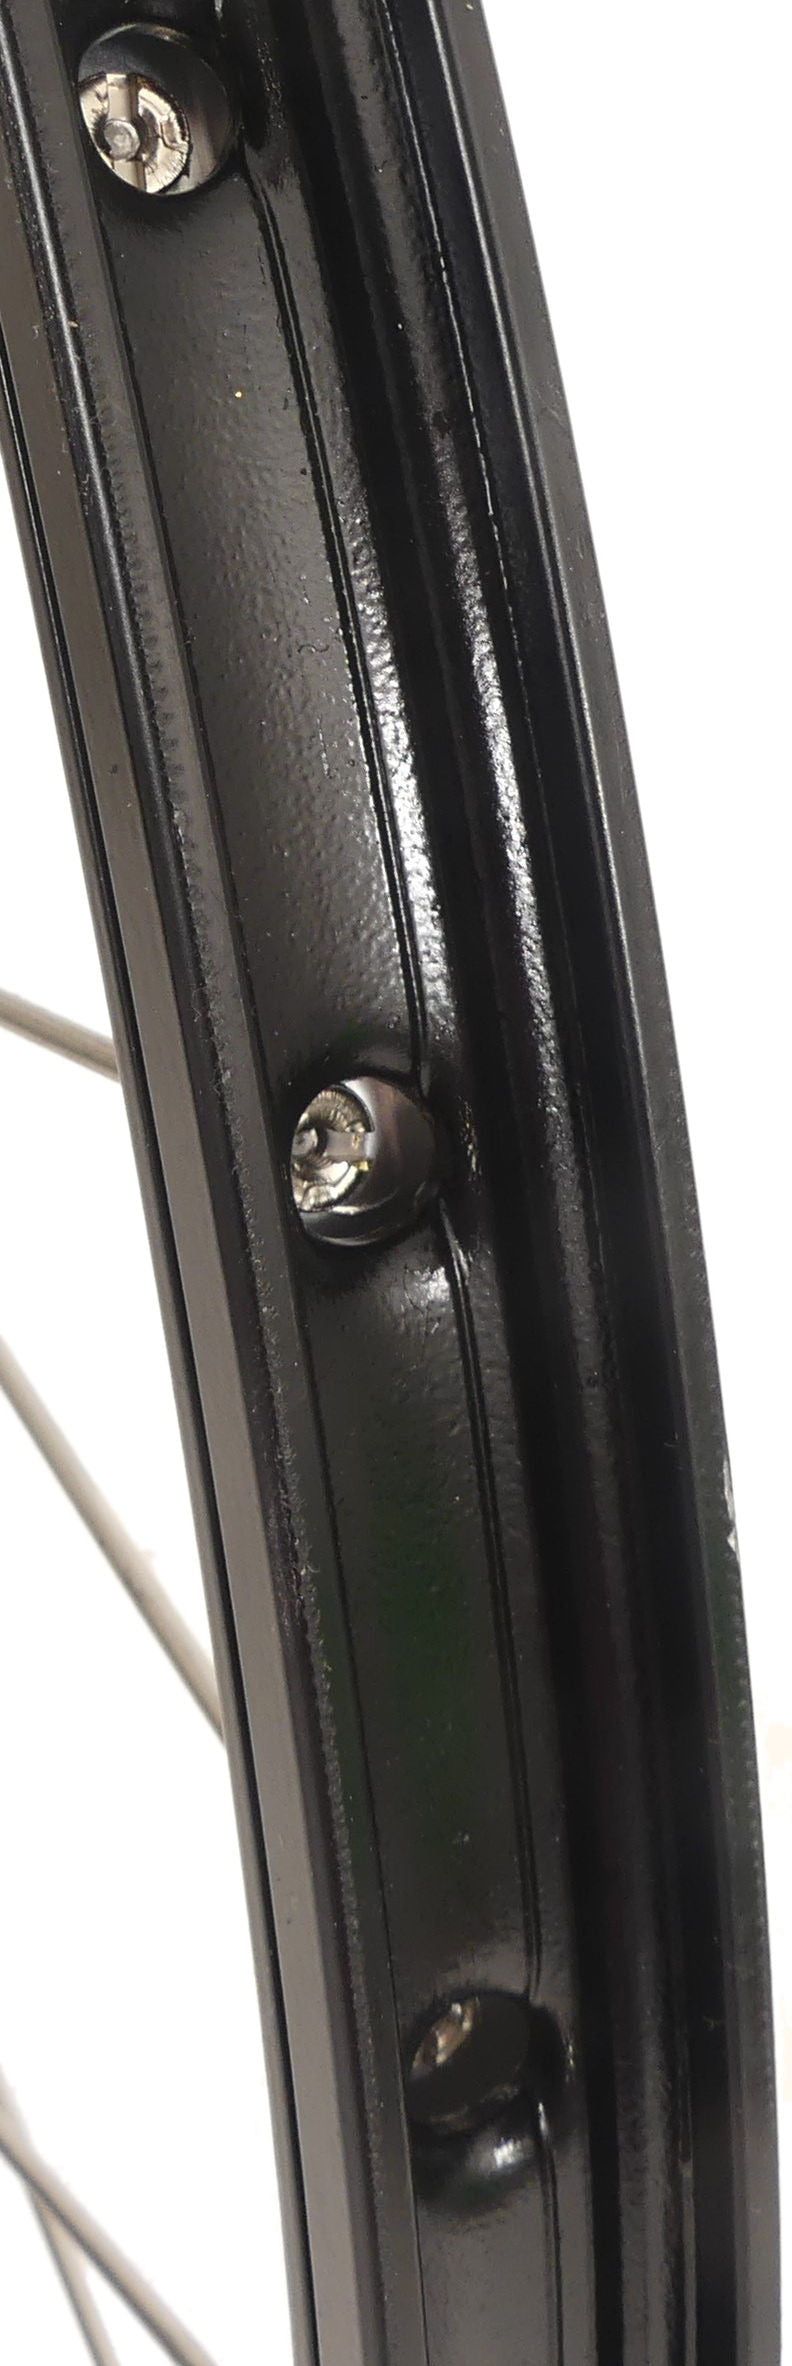 Achterwiel 28 622 x 19C met Shimano Nexus 7 naaf voor rollerbrake - zwarte velg met RVS spaken